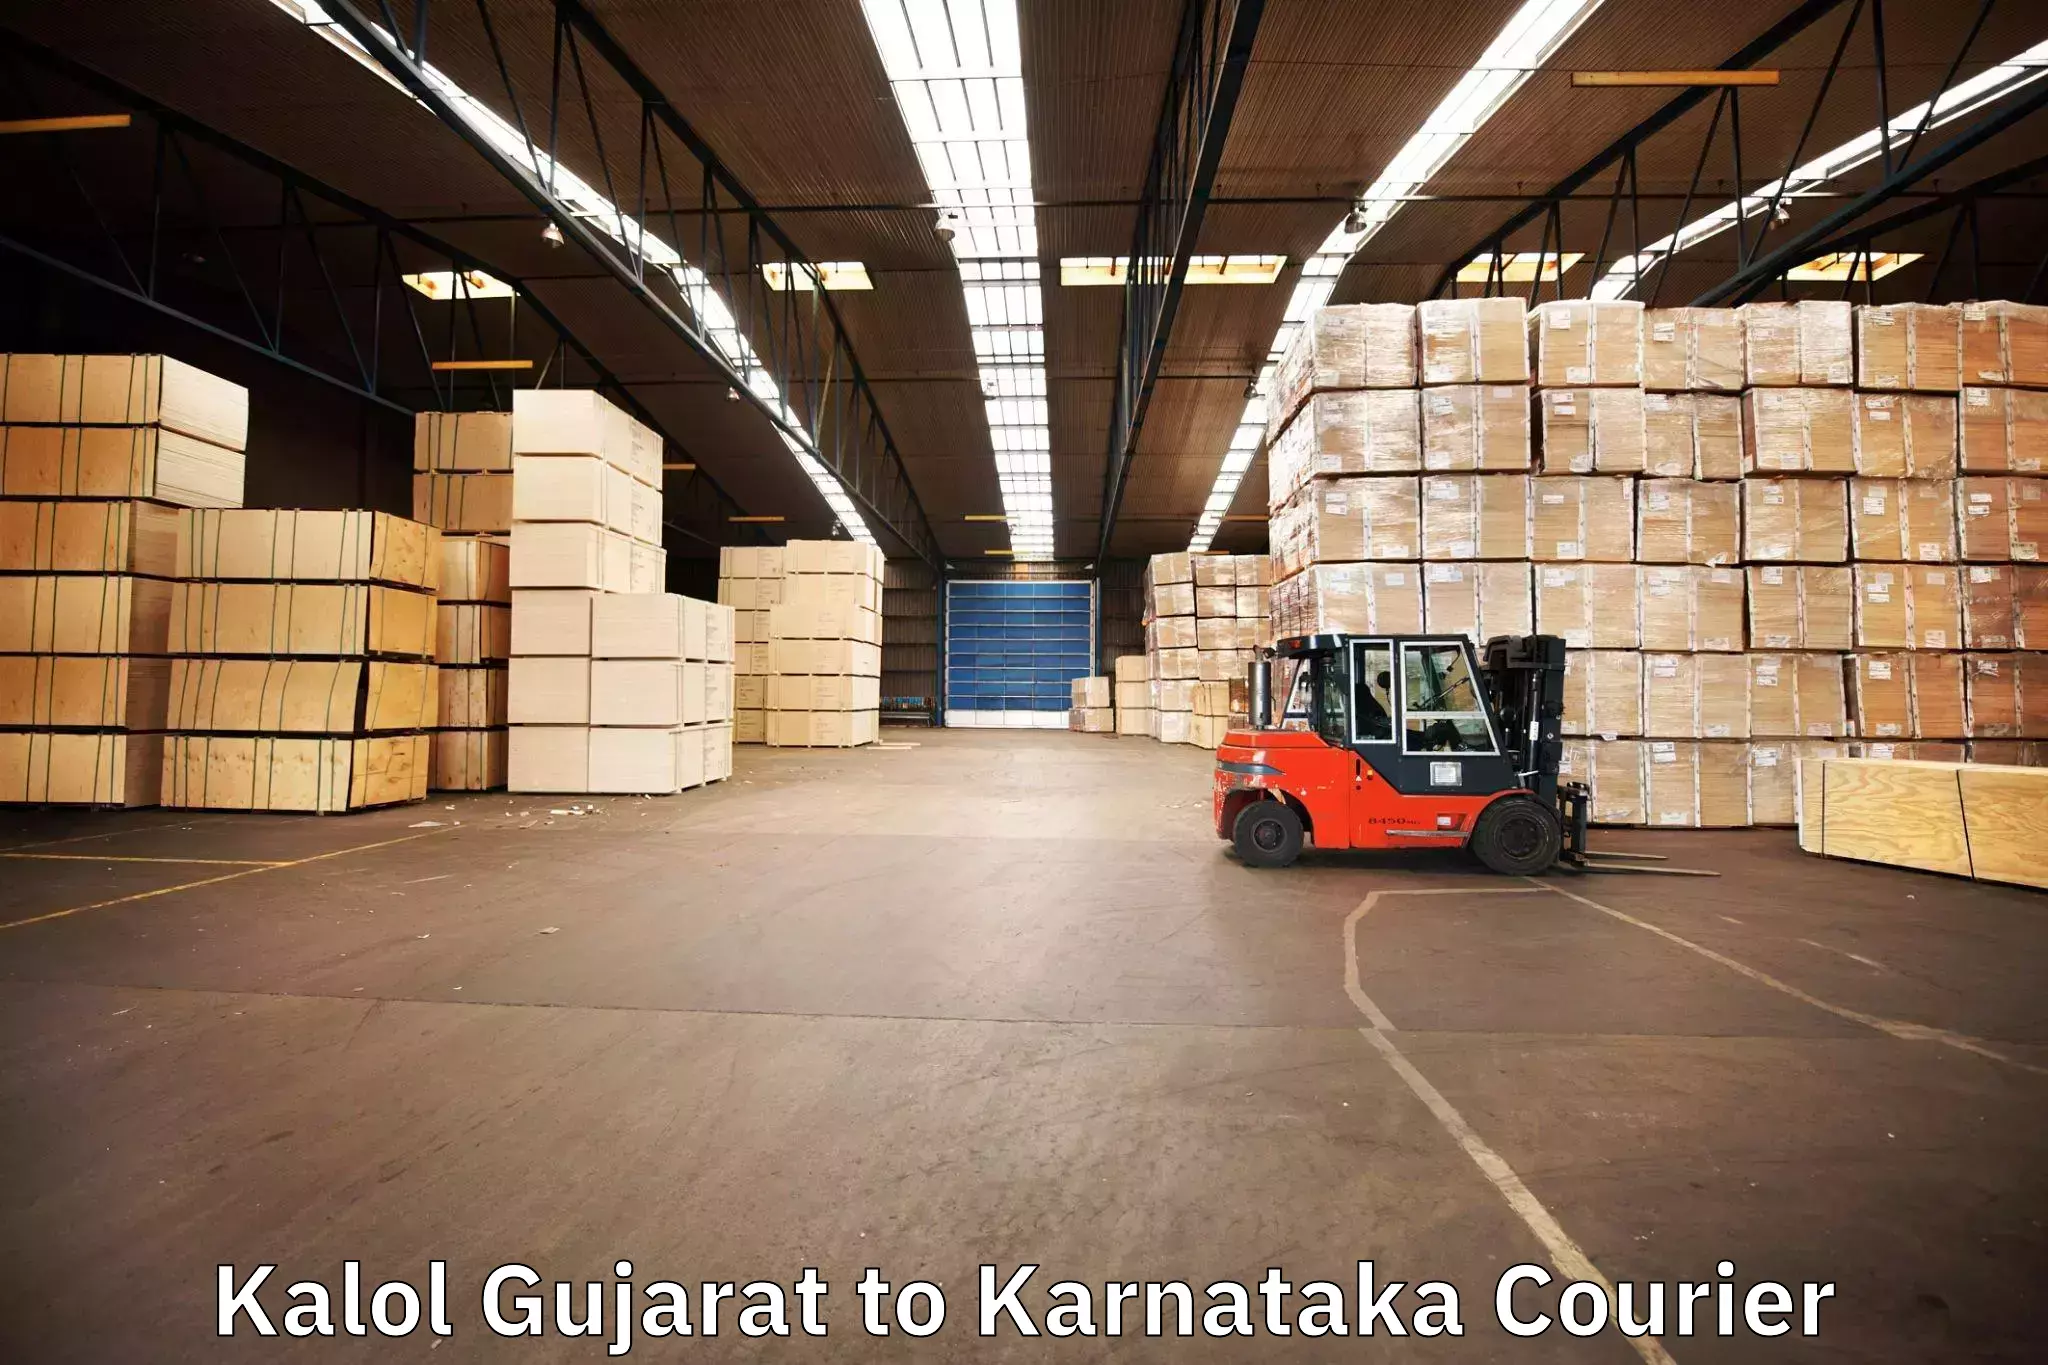 Professional home movers Kalol Gujarat to Kanjarakatte